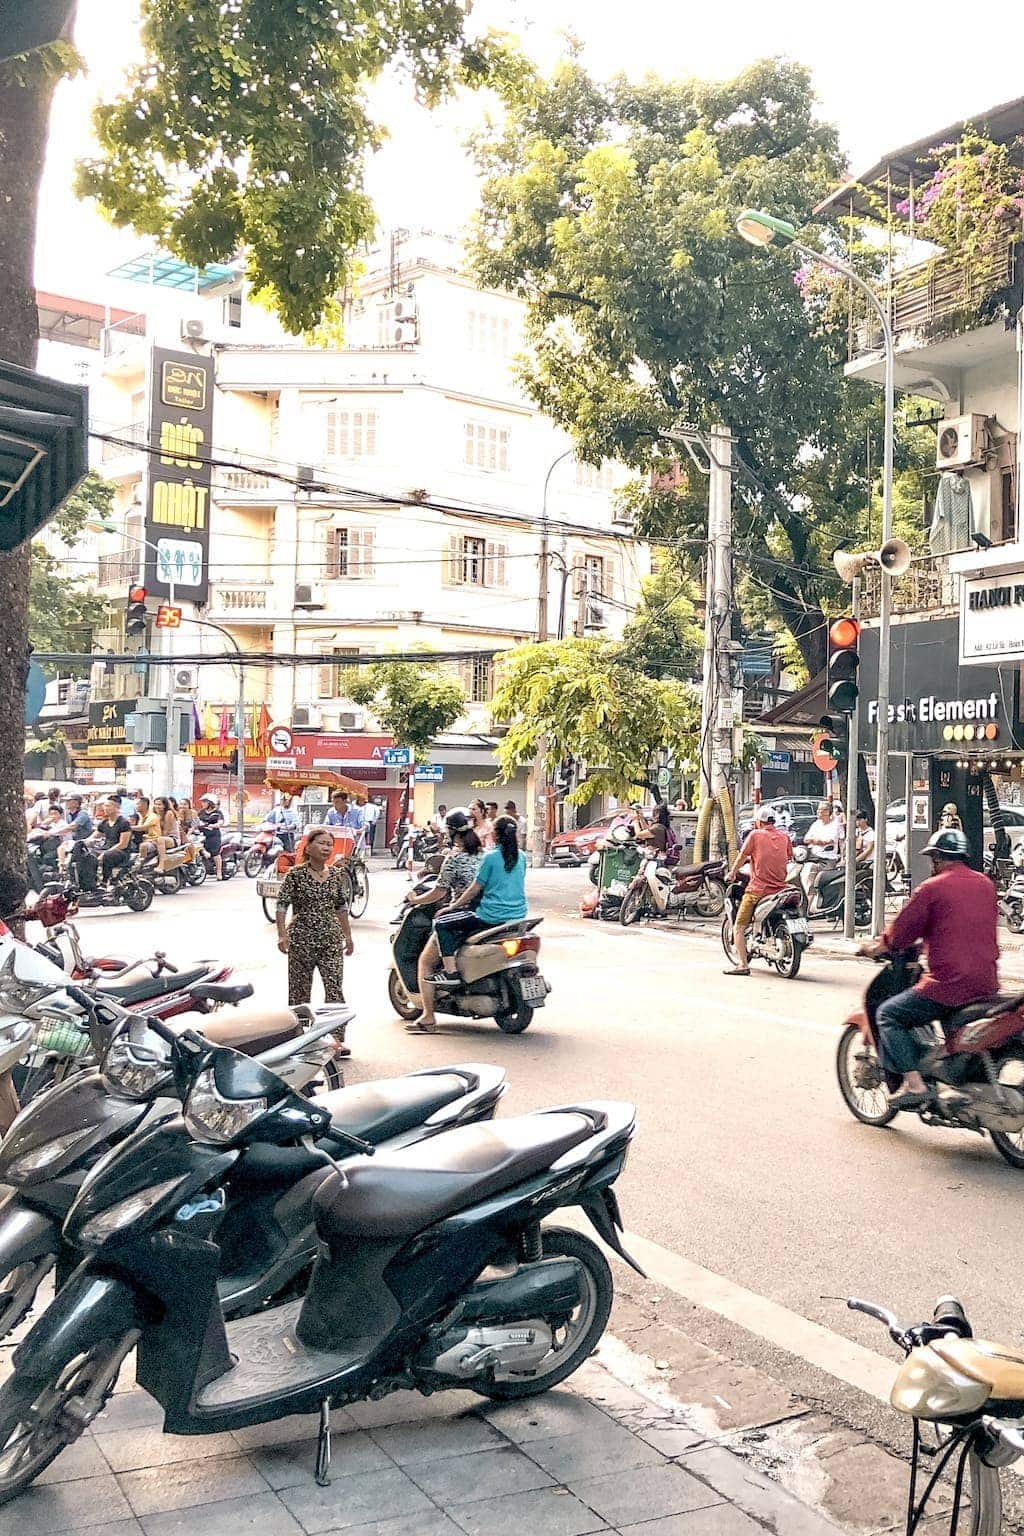 Things to do in Hanoi, Vietnam: Motor bikes and Hanoi traffic